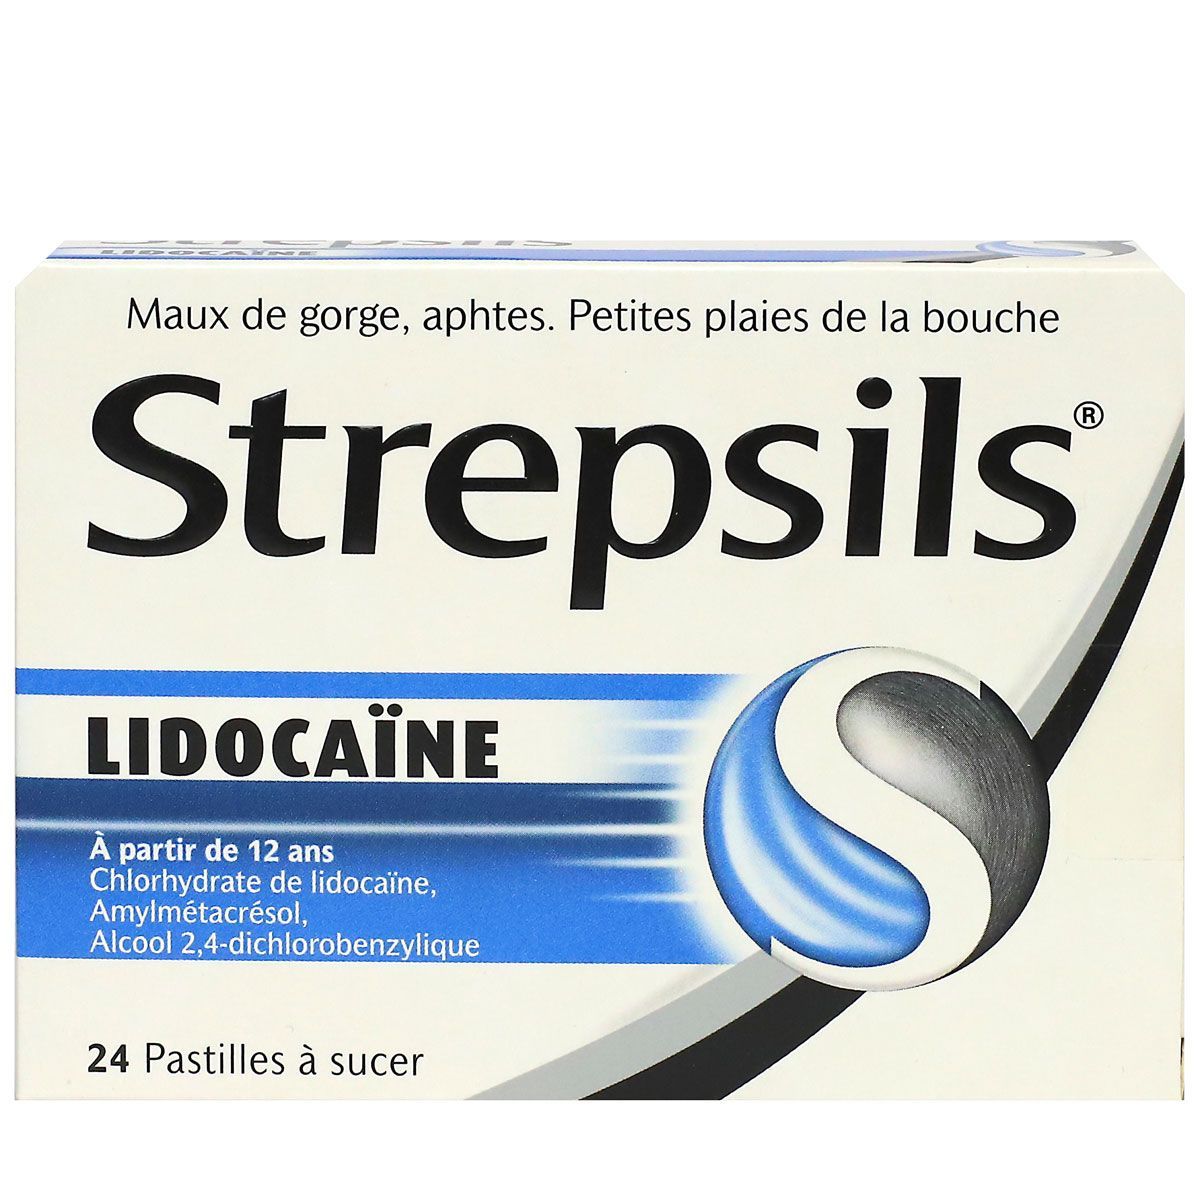 strepsils pastilles lidocaïne soulage les maux de gorge, les